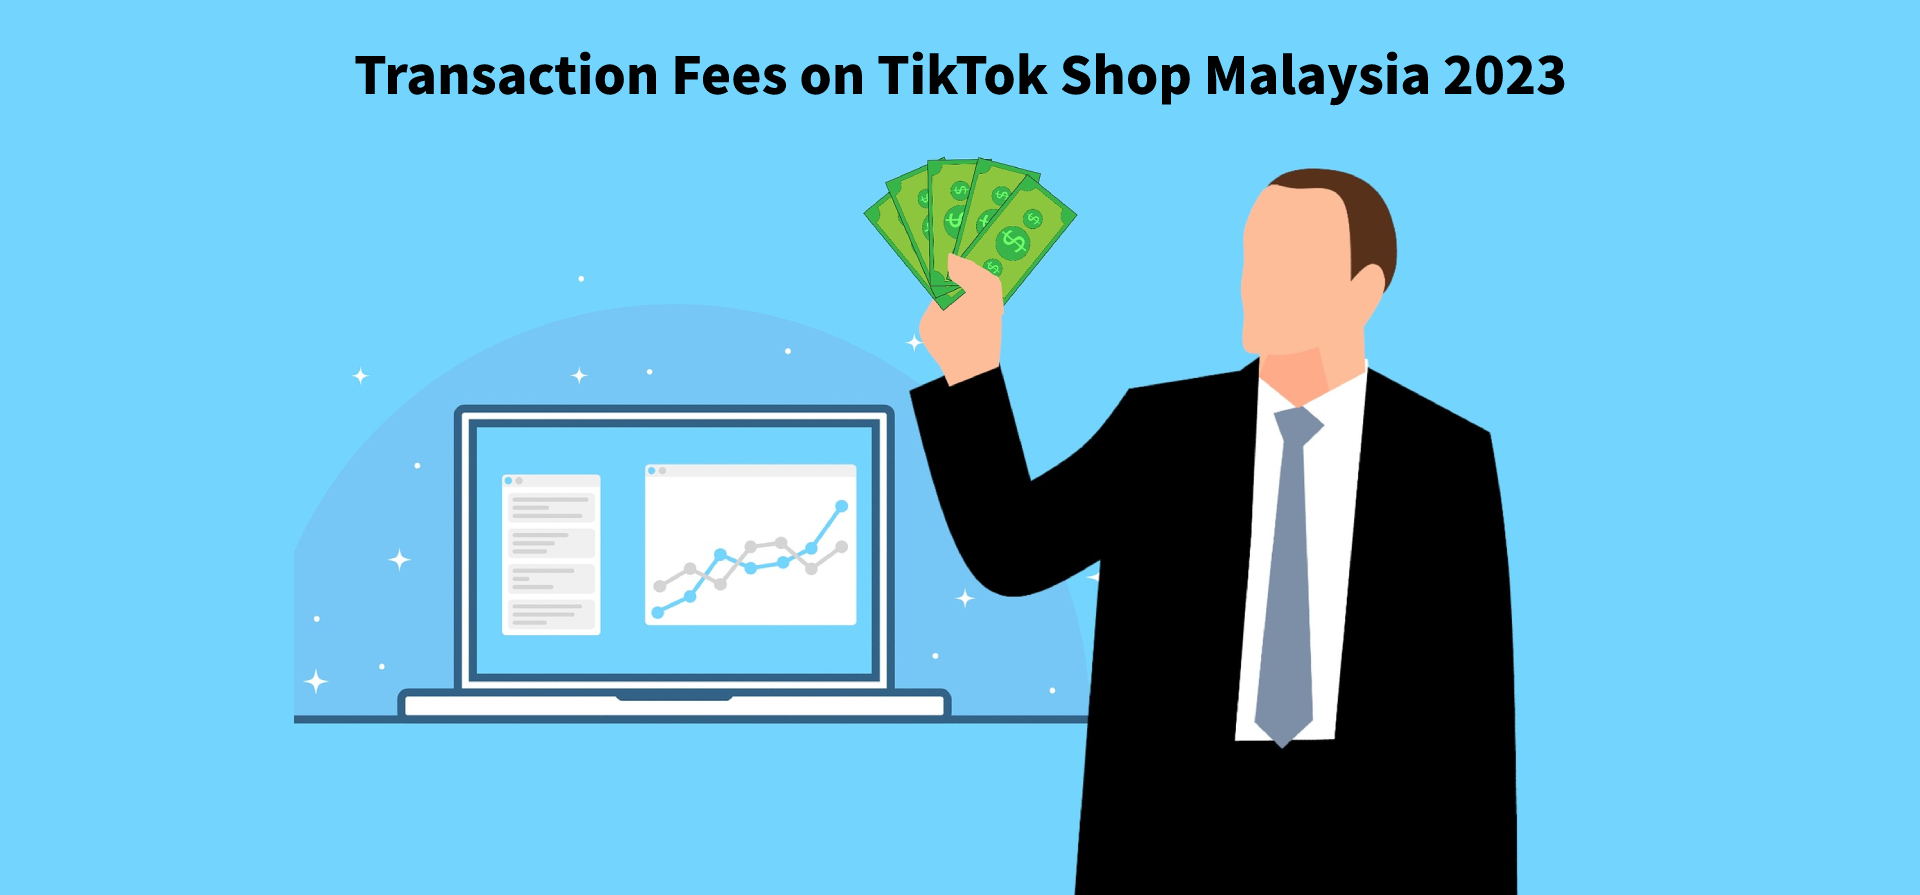 Transaction Fees on TikTok Shop Malaysia 2023